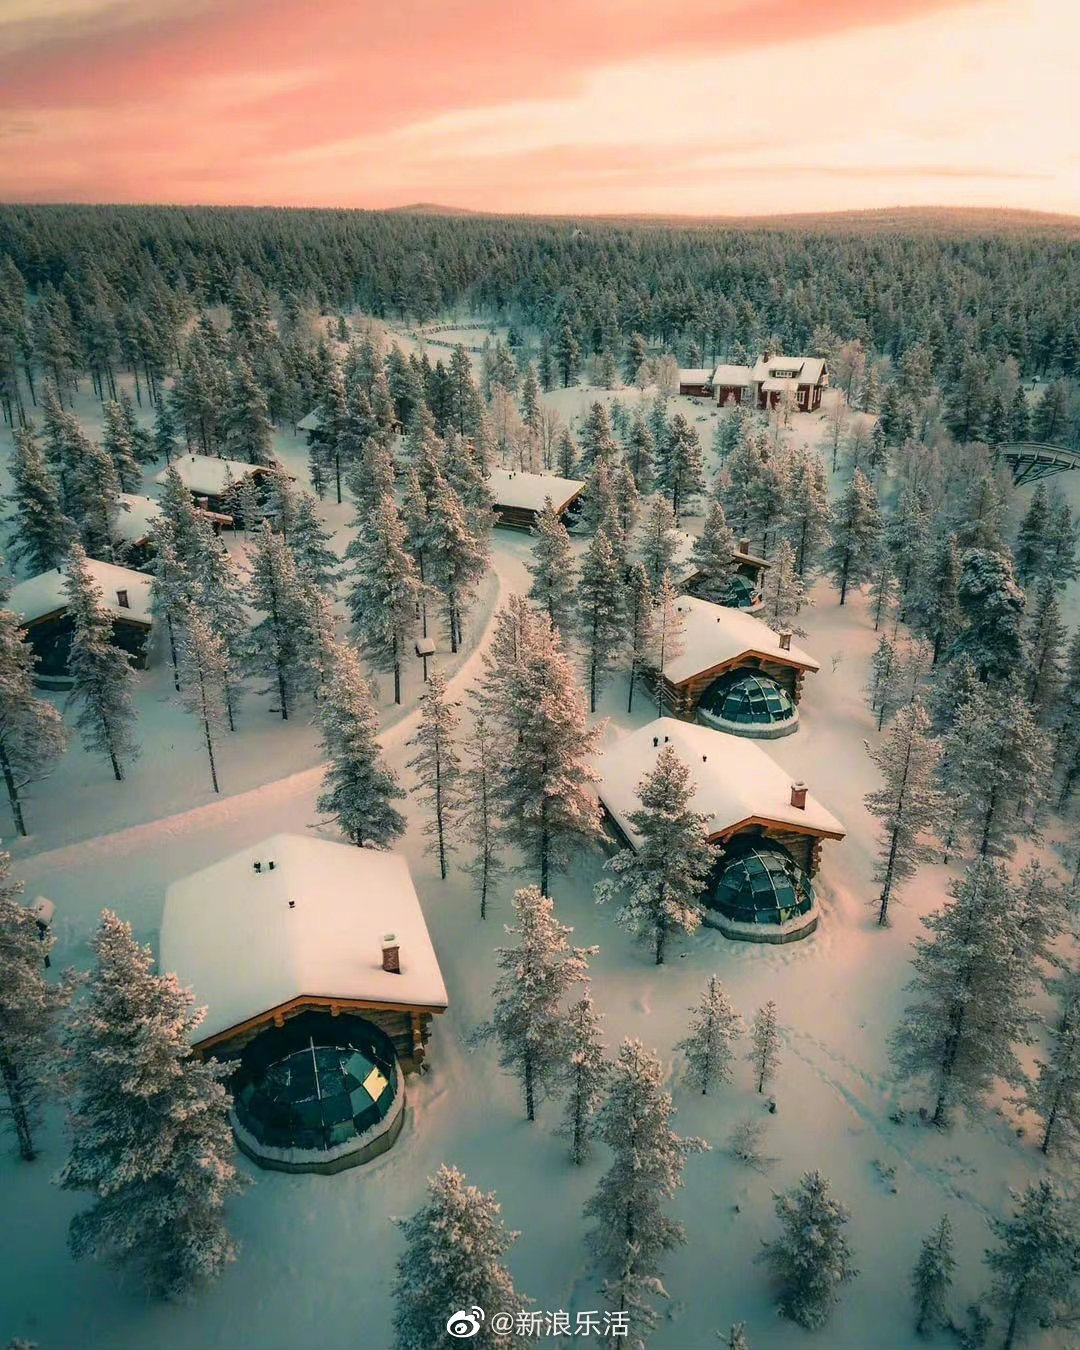 芬兰 木屋 草屋顶 - Pixabay上的免费照片 - Pixabay